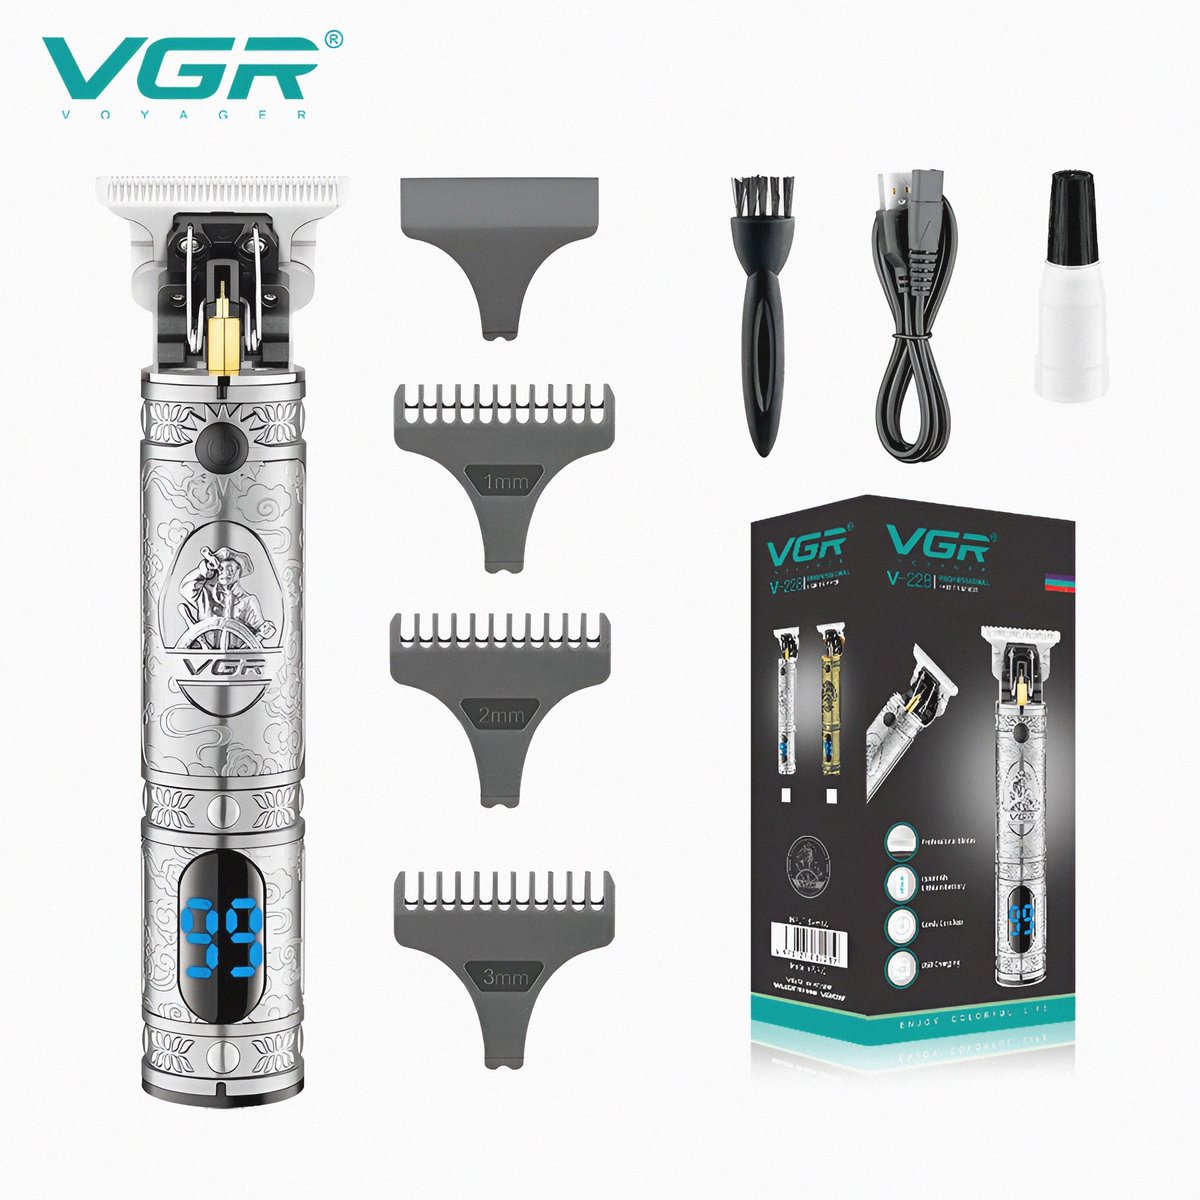 VGR V-228 Premium Haar Trimmer Voor Mannen, Professionele USB Cordless Opladen Haar Tondeuse met LED Digitale Display